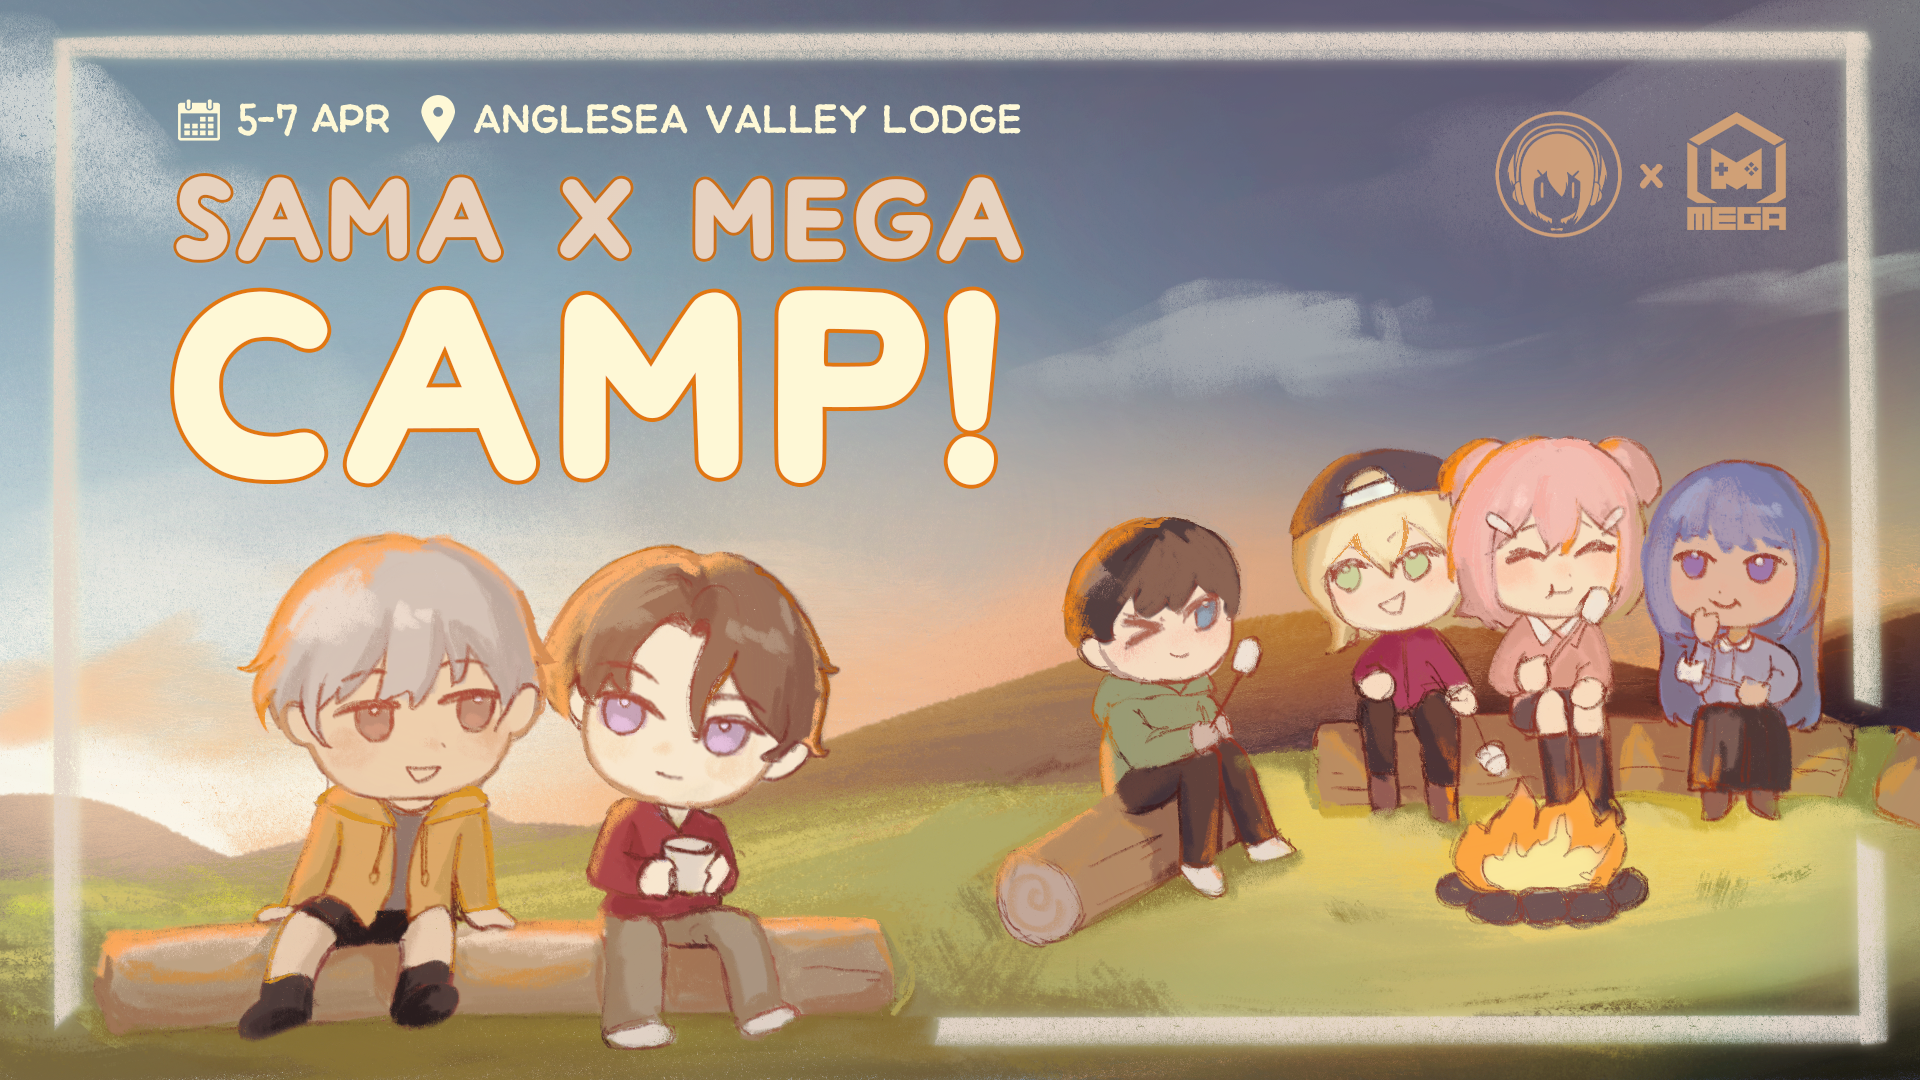 MEGA x SAMA Camp